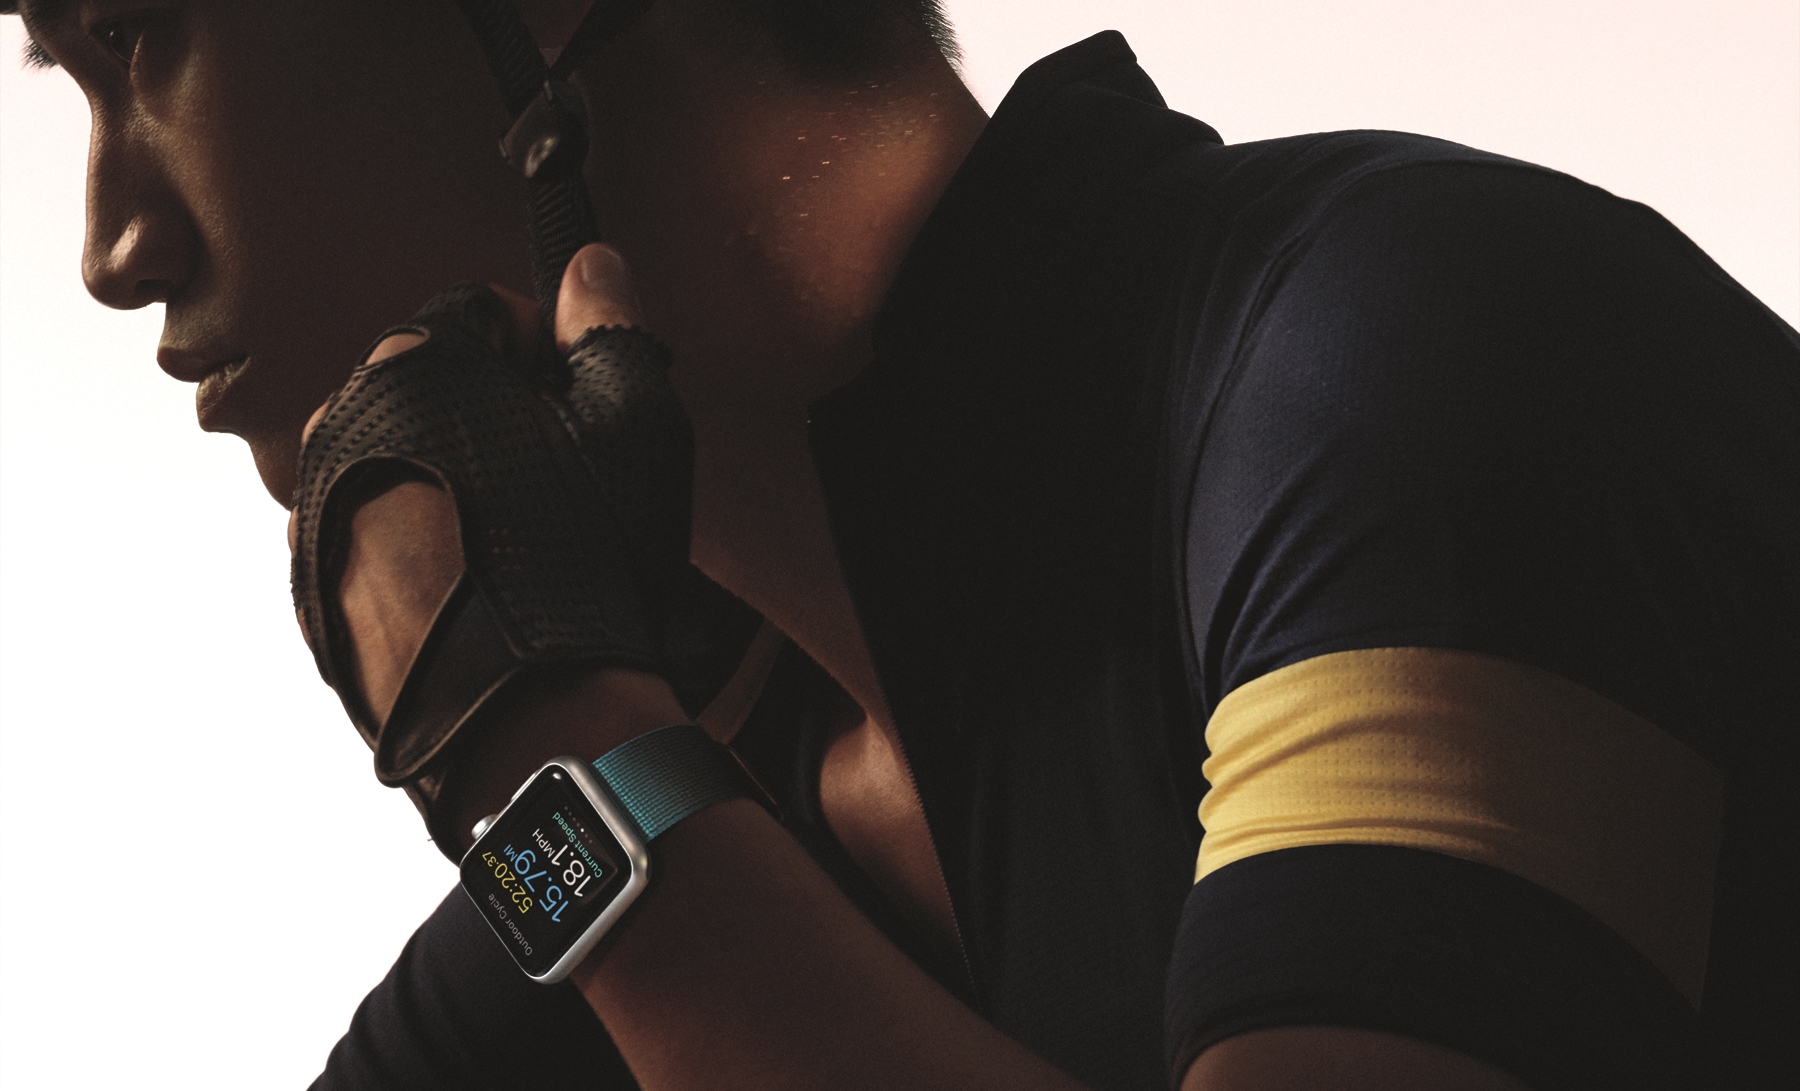 Apple Watch on wrist